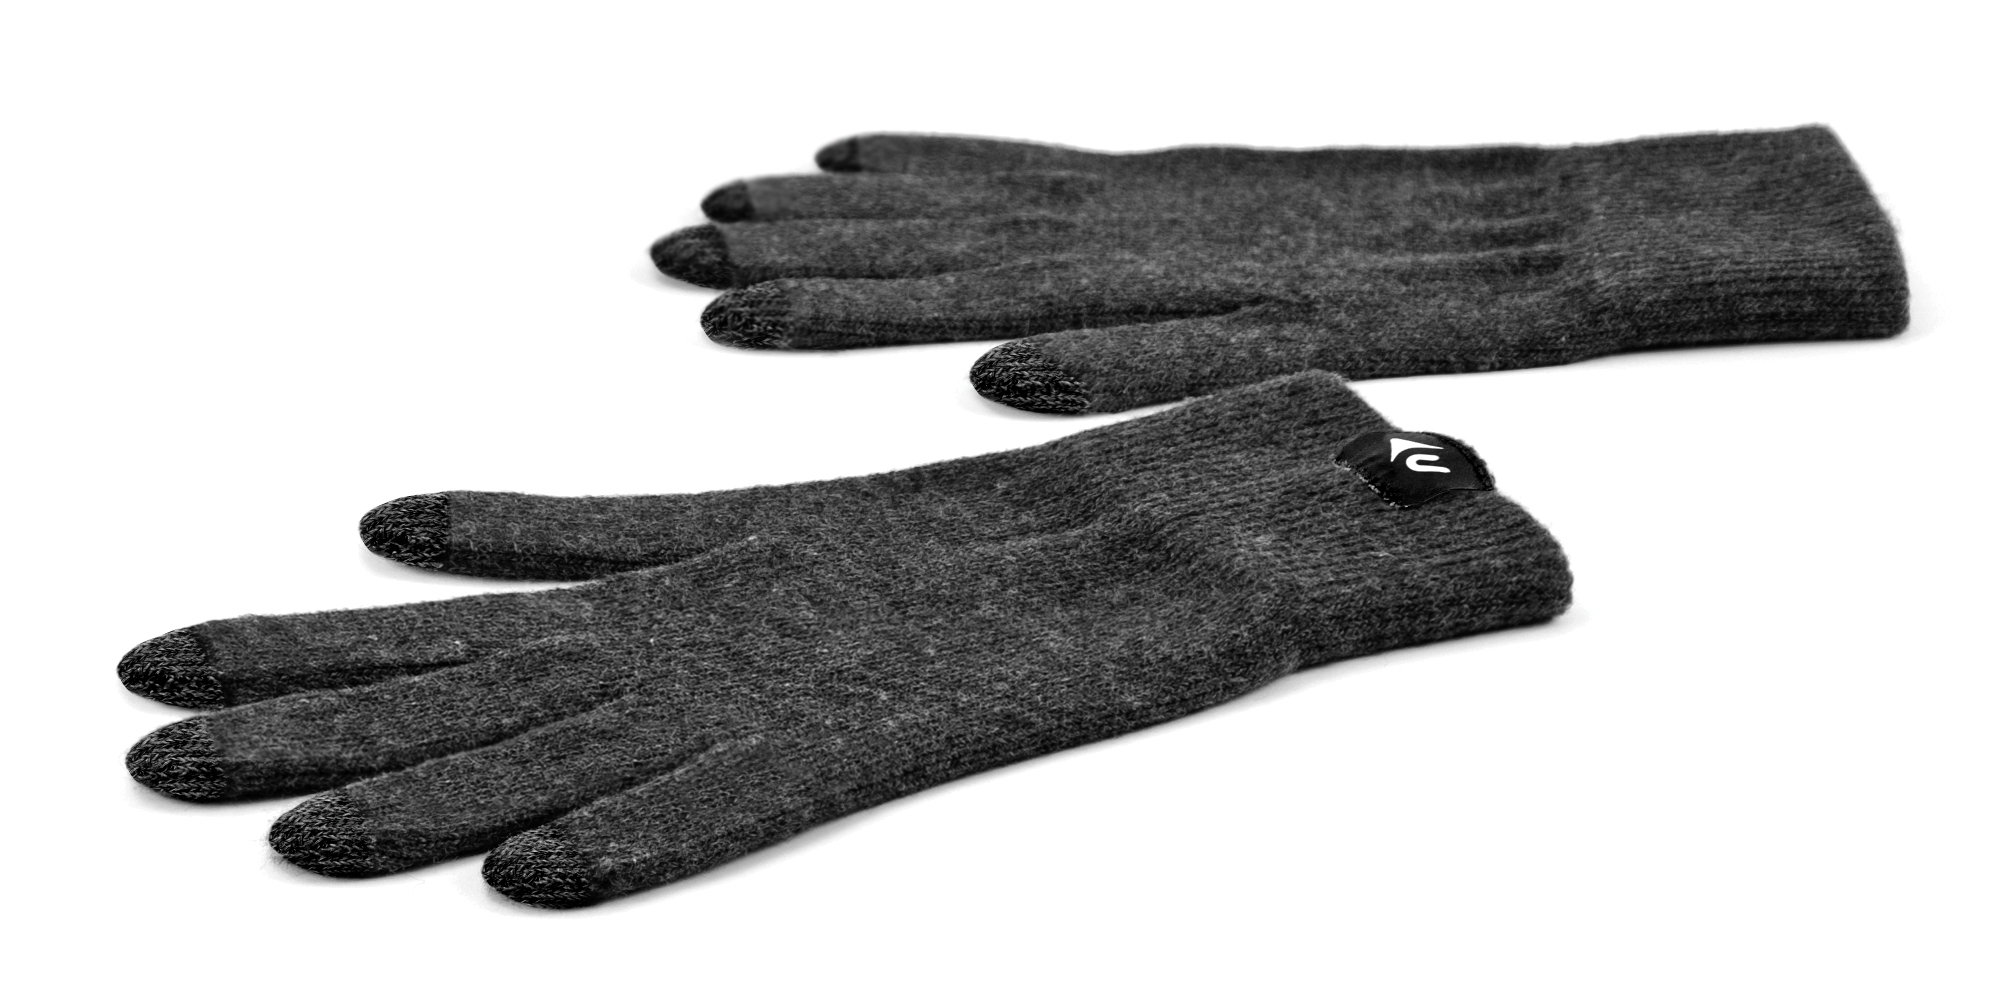 NewerTech NuTouch Gloves